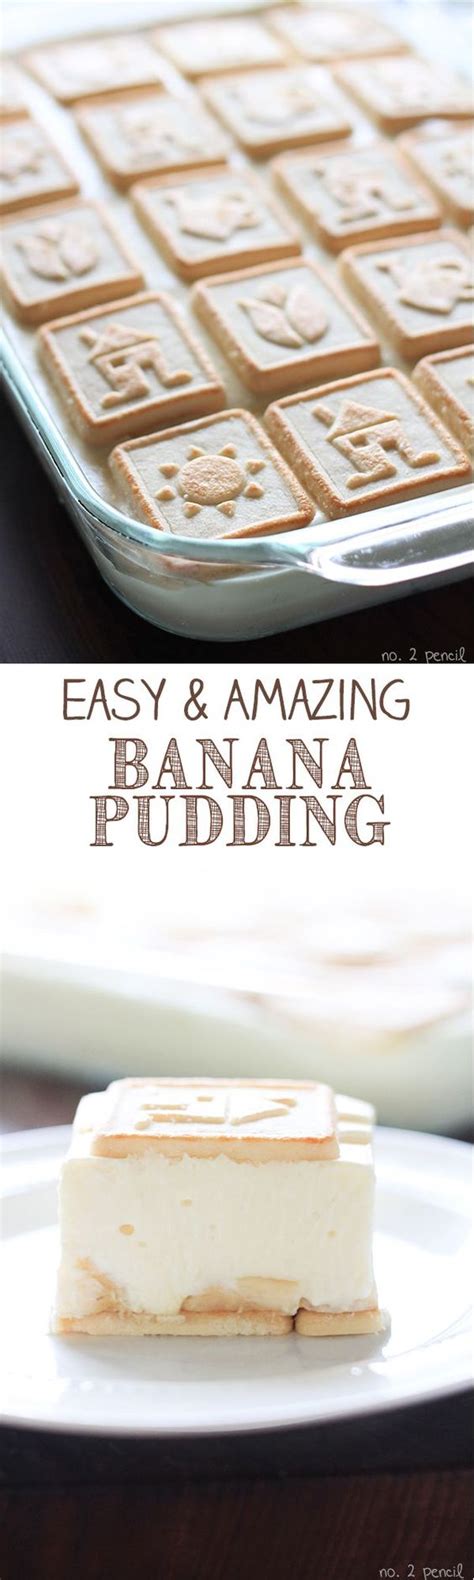 Paula deen's not yo mama's banana pudding. Paula Deen Banana Pudding | Recipe | Easy banana pudding ...